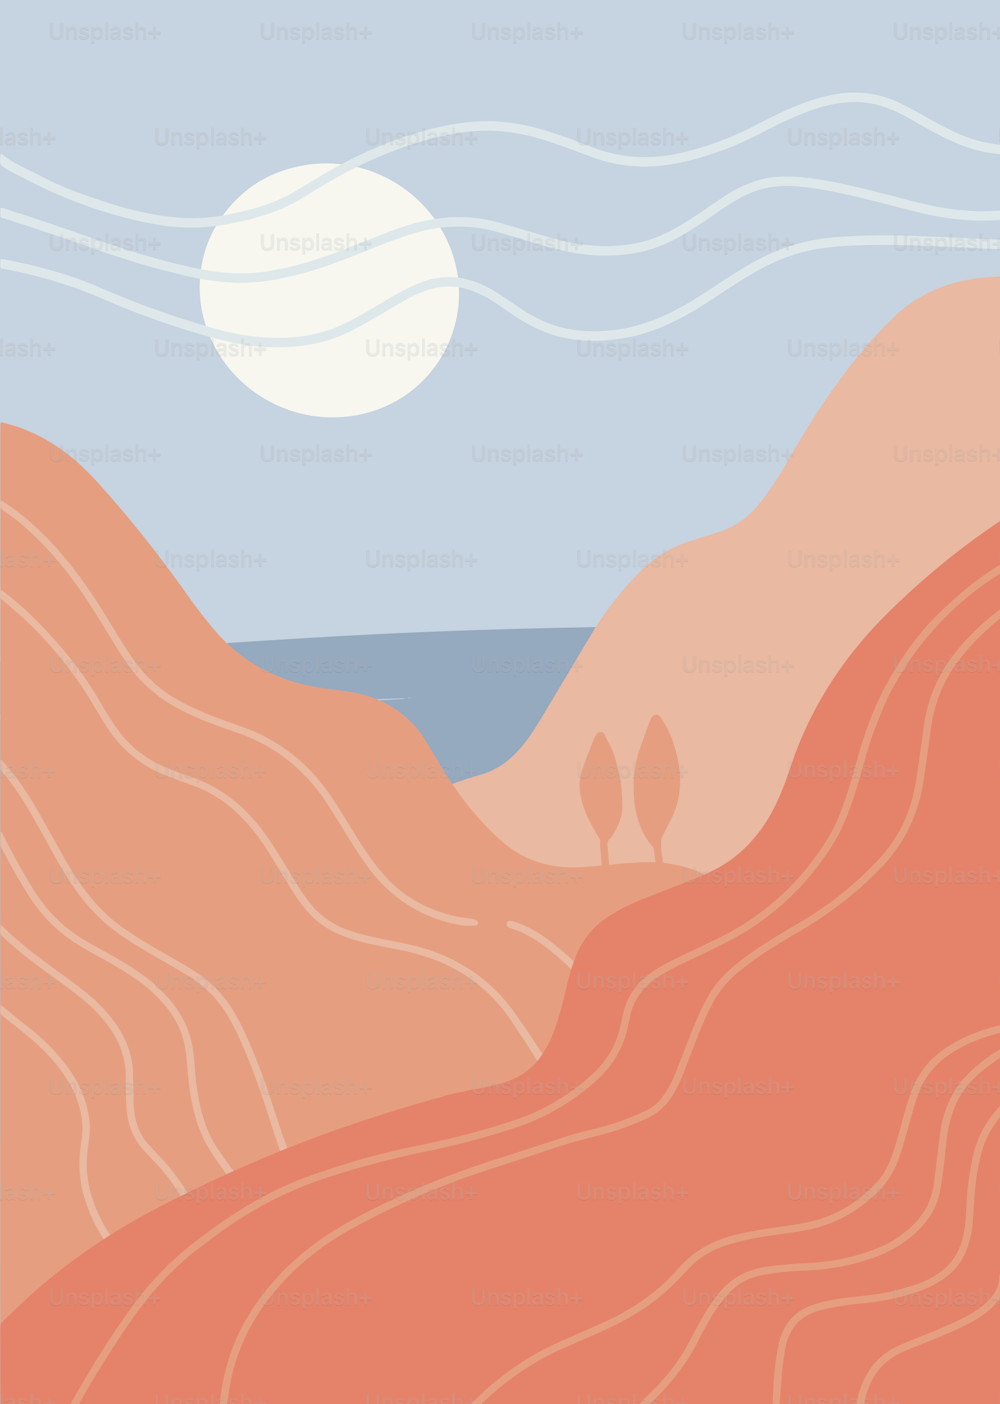 Abstrakte minimalistische Kunstlandschaft. Panorama der Berge, des Meeres und der heißen weißen Sonne. Vektor flache handgezeichnete Grafiken